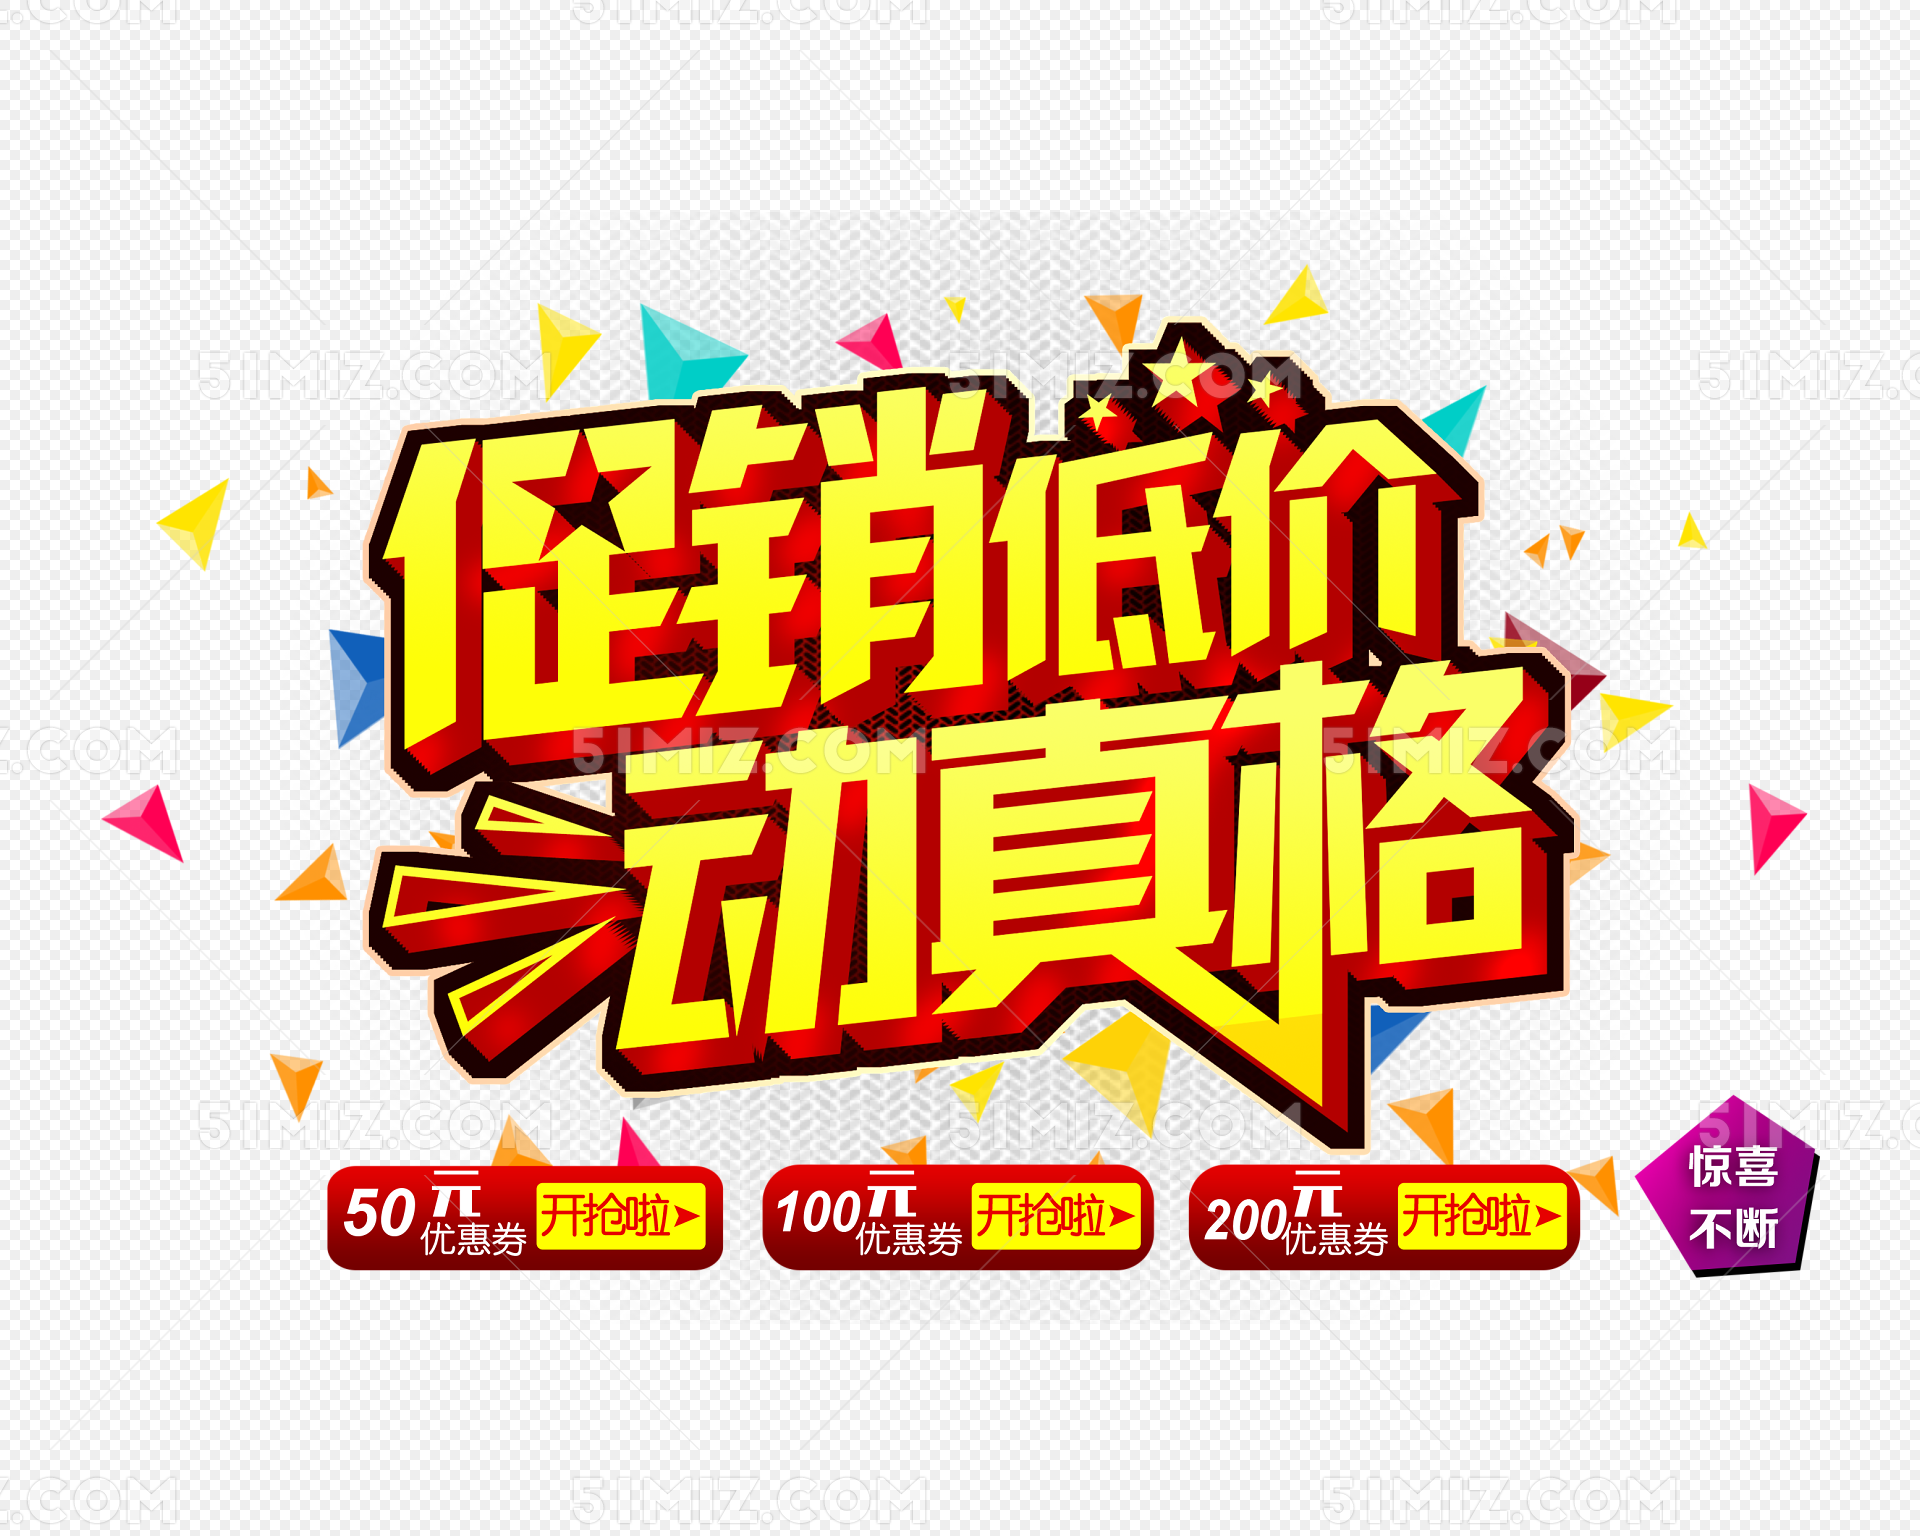 新湖圳美社区启动2020年民微活动推广宣传_读特新闻客户端